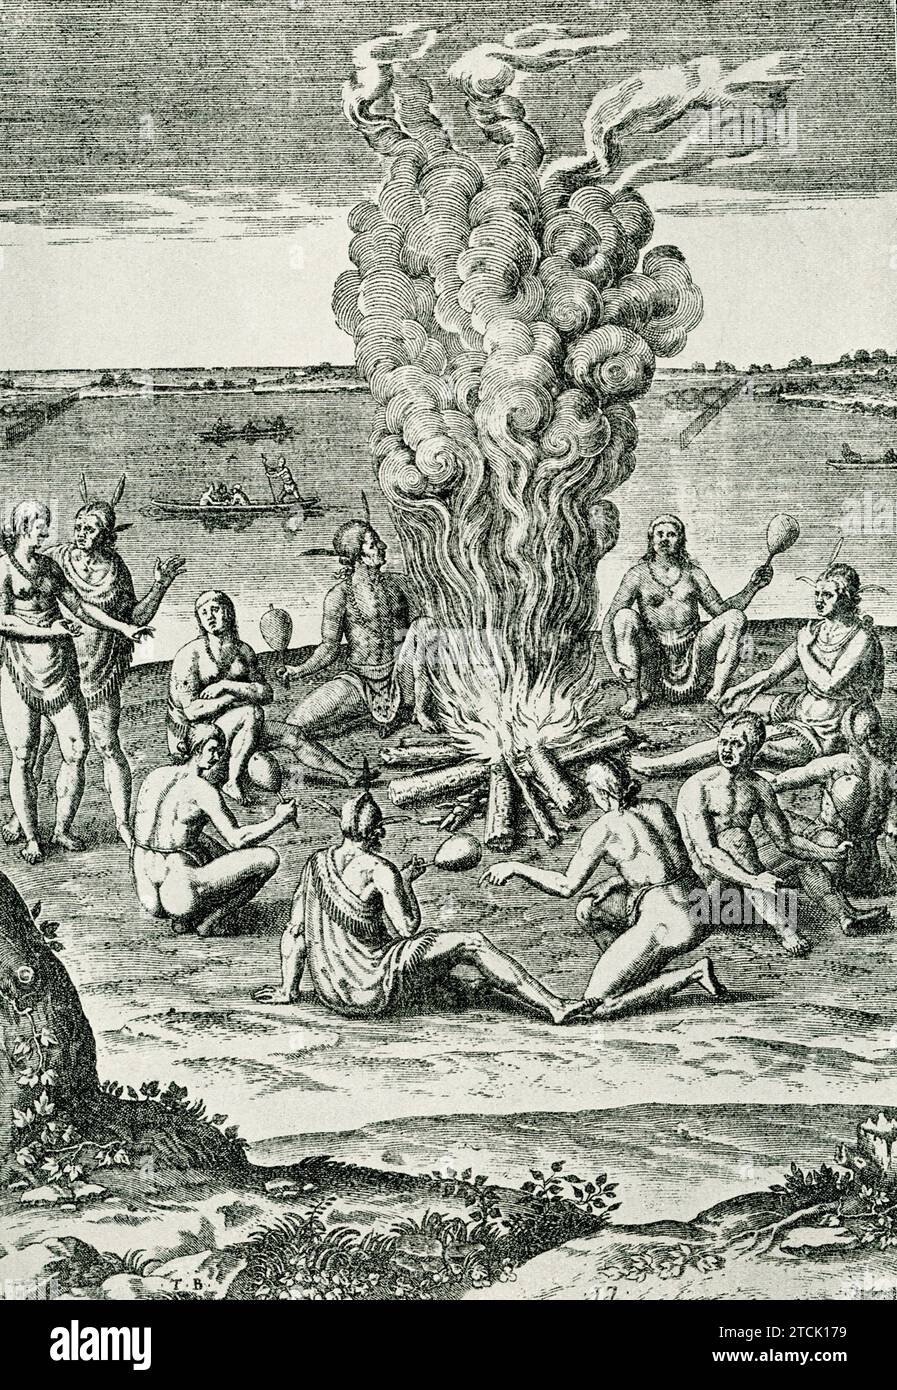 La didascalia di questa immagine recita: Popolazioni indigene della Virginia per il loro fuoco”. È tratto dal "Report of the New found Land of Virginia", pubblicato a Francoforte nel 1590. Foto Stock